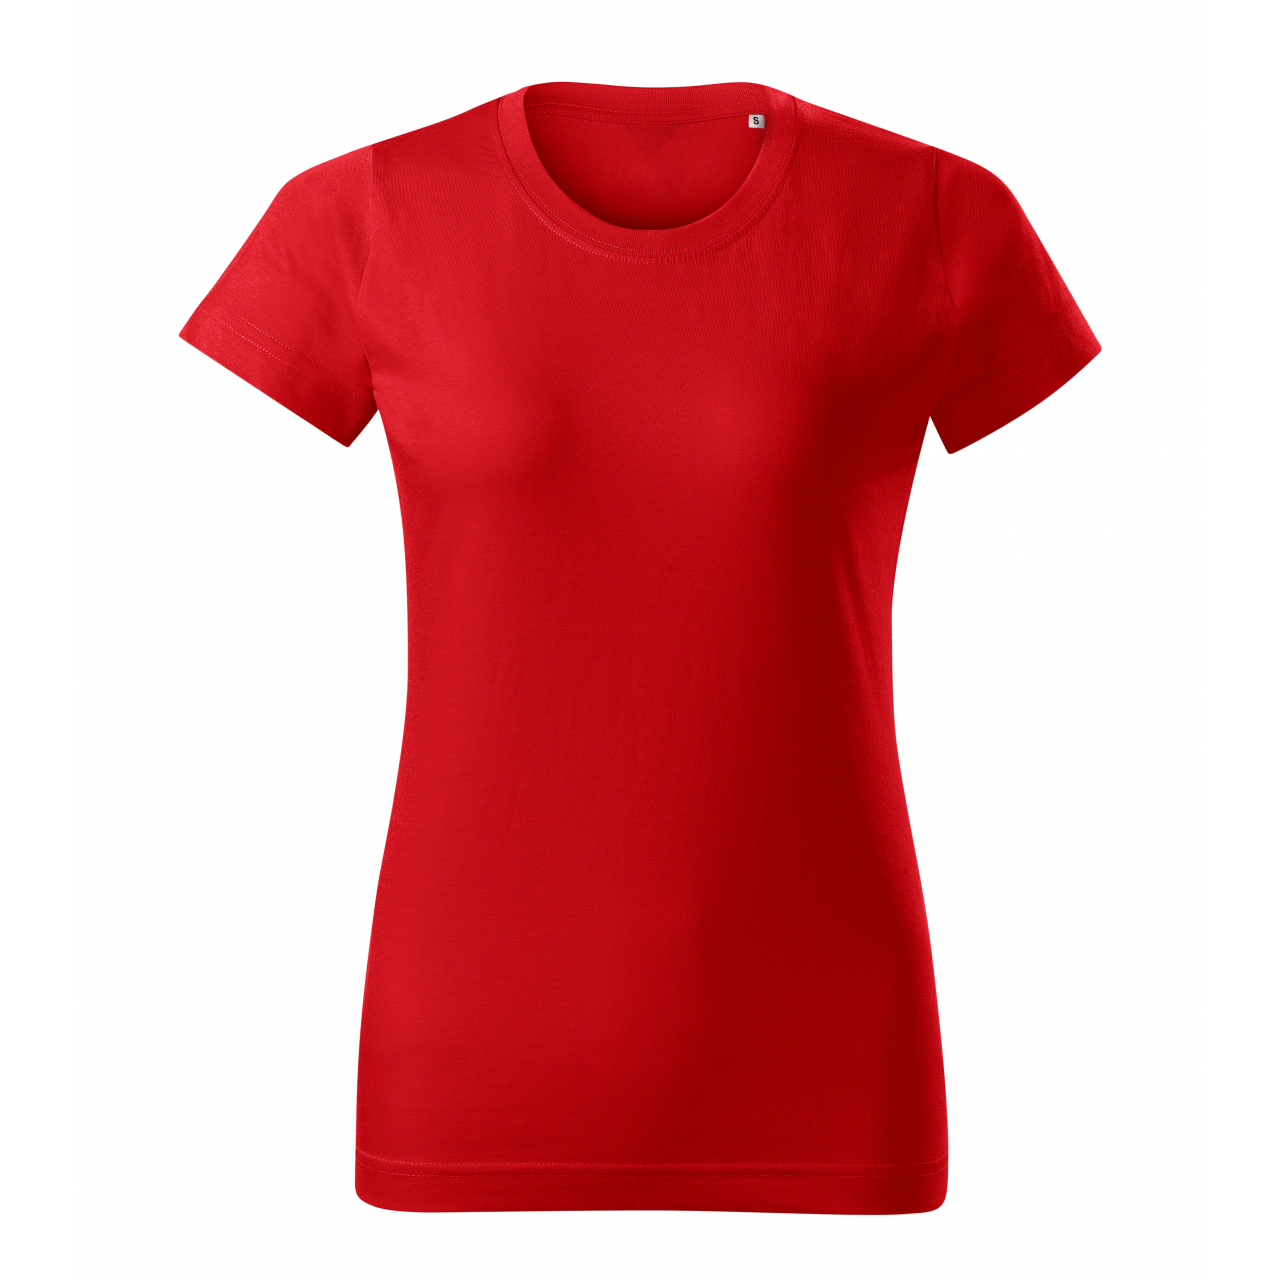 Tričko dámské Malfini Basic Free - červené, XS